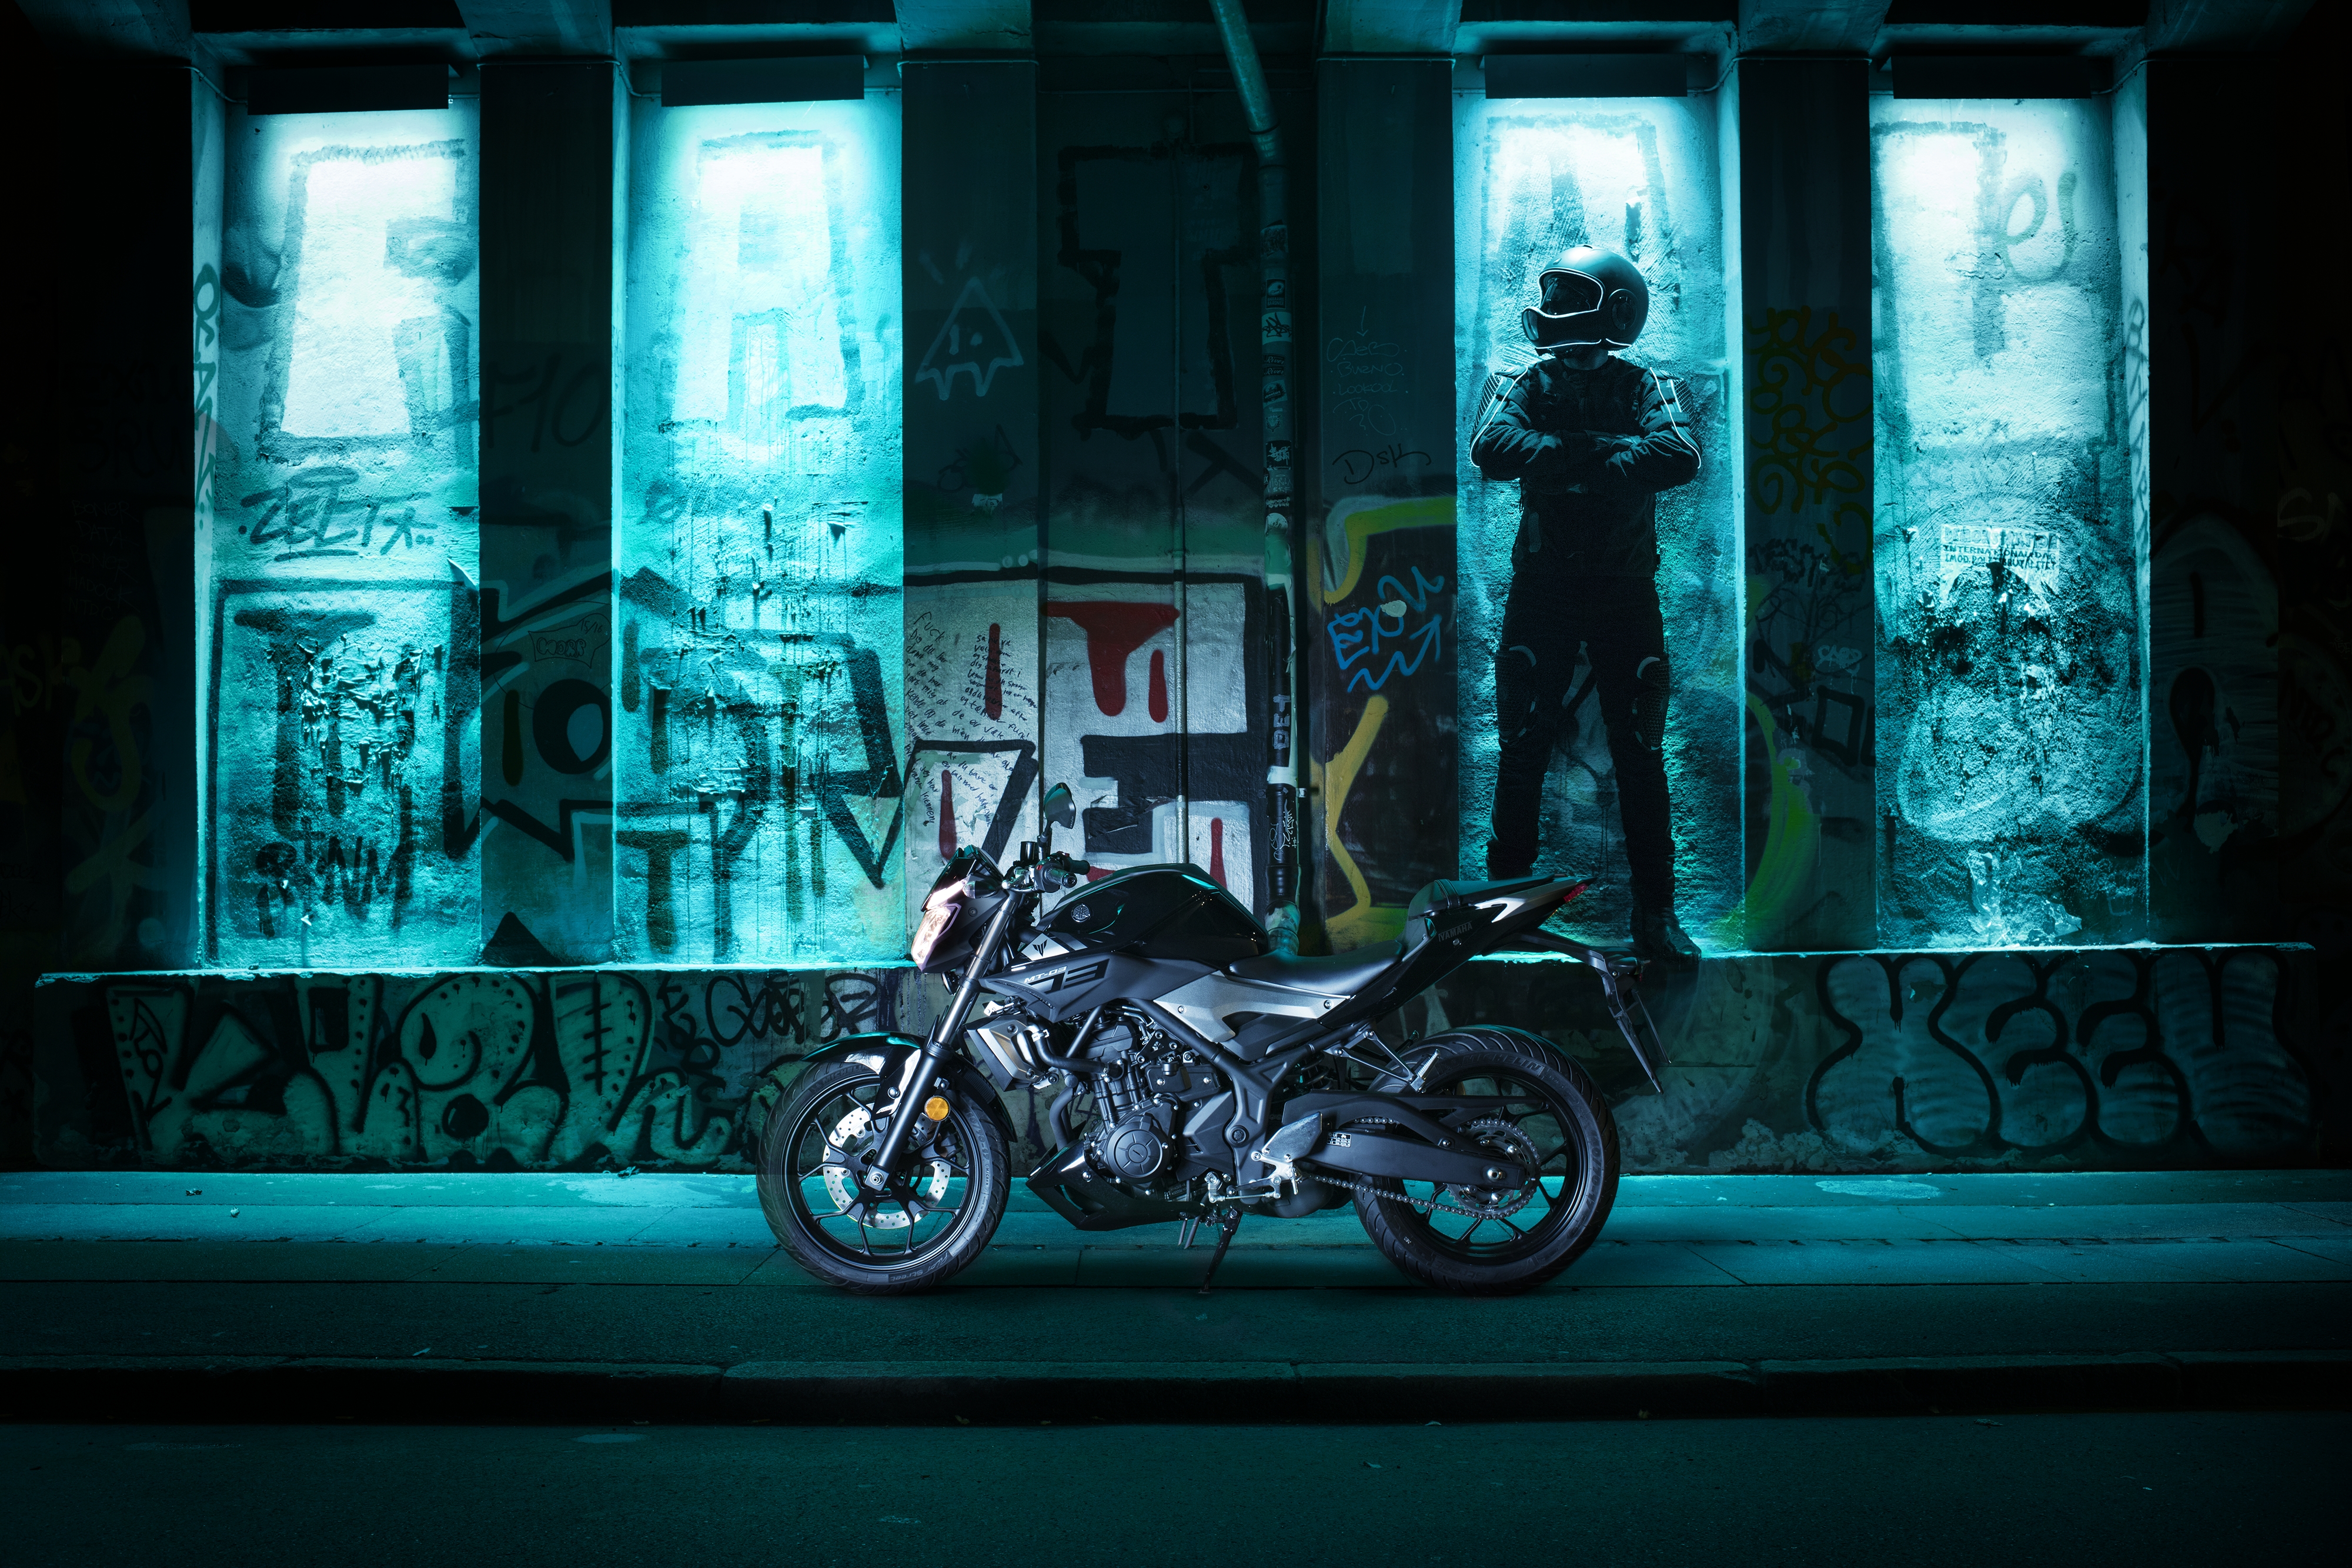 fond d'écran mt 03,bleu,lumière,véhicule,moto,nuit